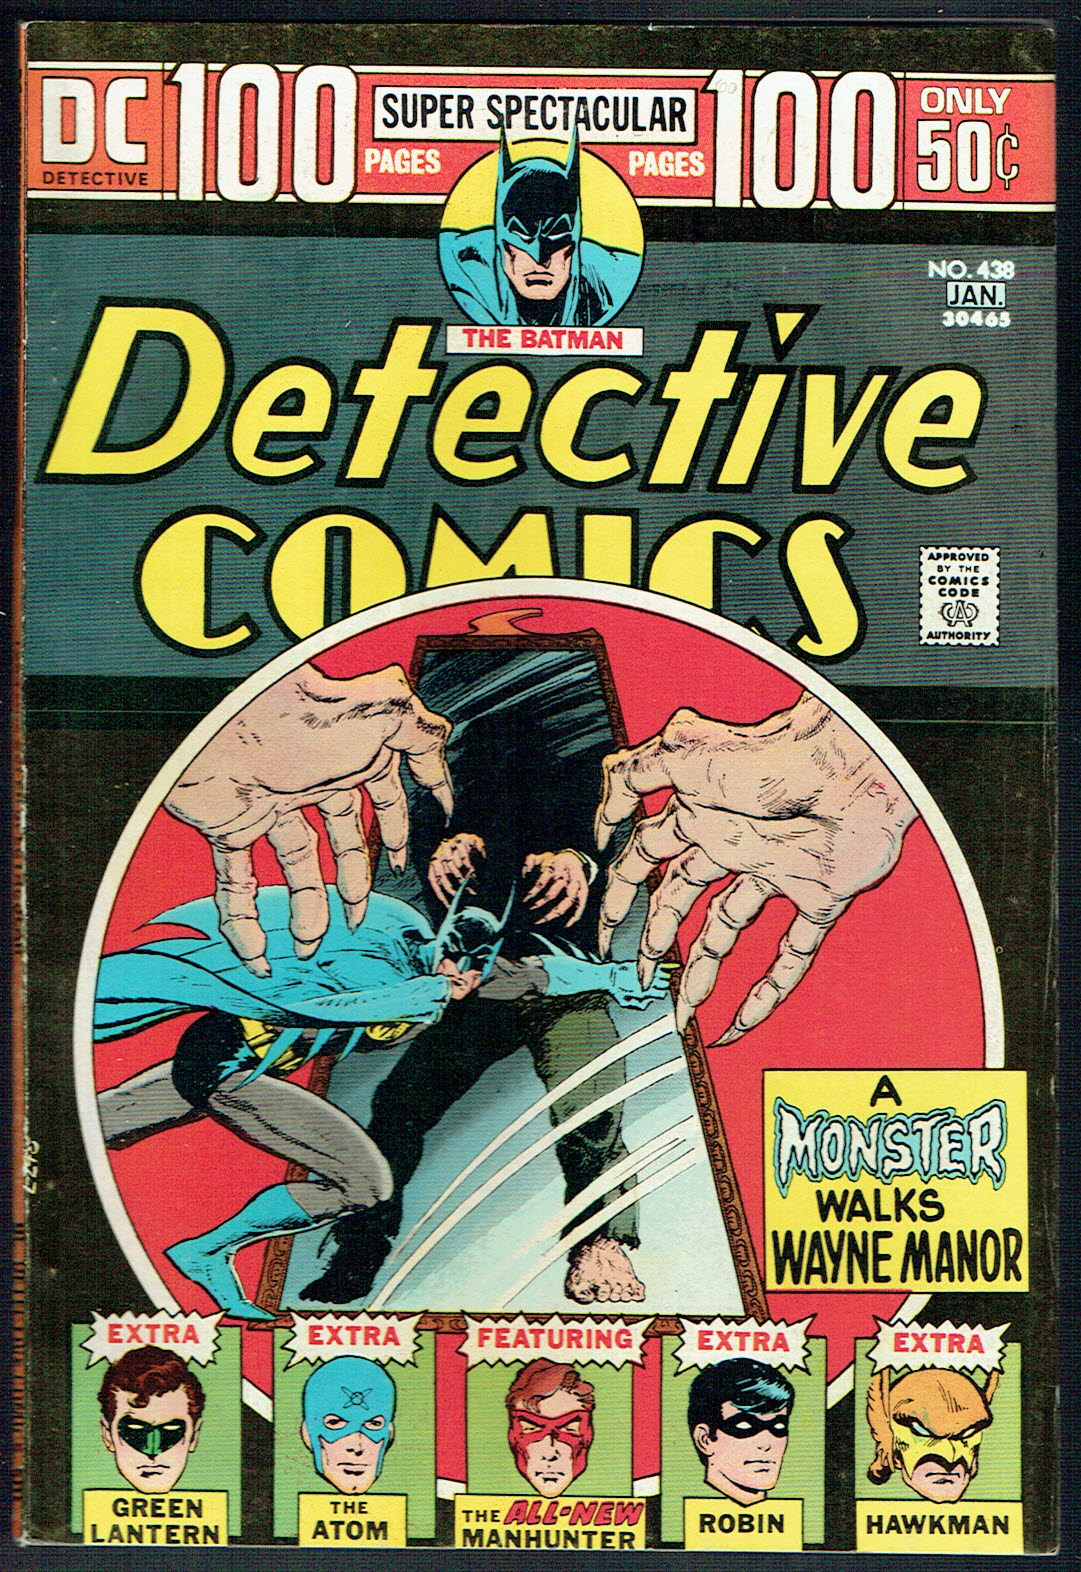 Detective Comics #438